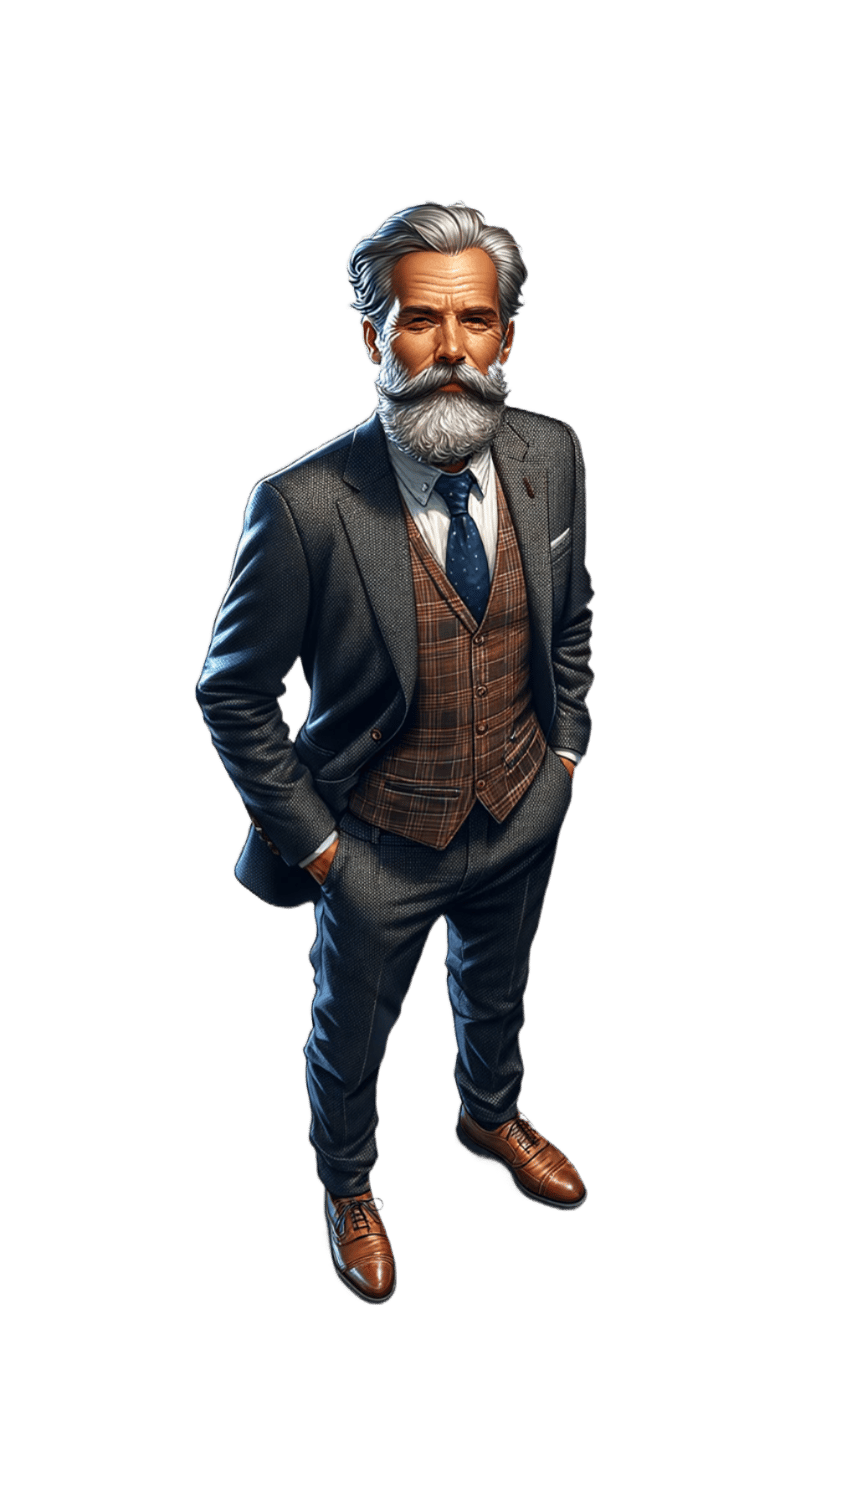 DALL·E 2023-10-25 16.18.54 - Ganzkörperfoto eines Geschäftsführers mittleren Alters mit einem dezenten Bart. Er trägt einen formellen Anzug, steht aufrecht und hat eine Hand lässi-fotor-20231025161936